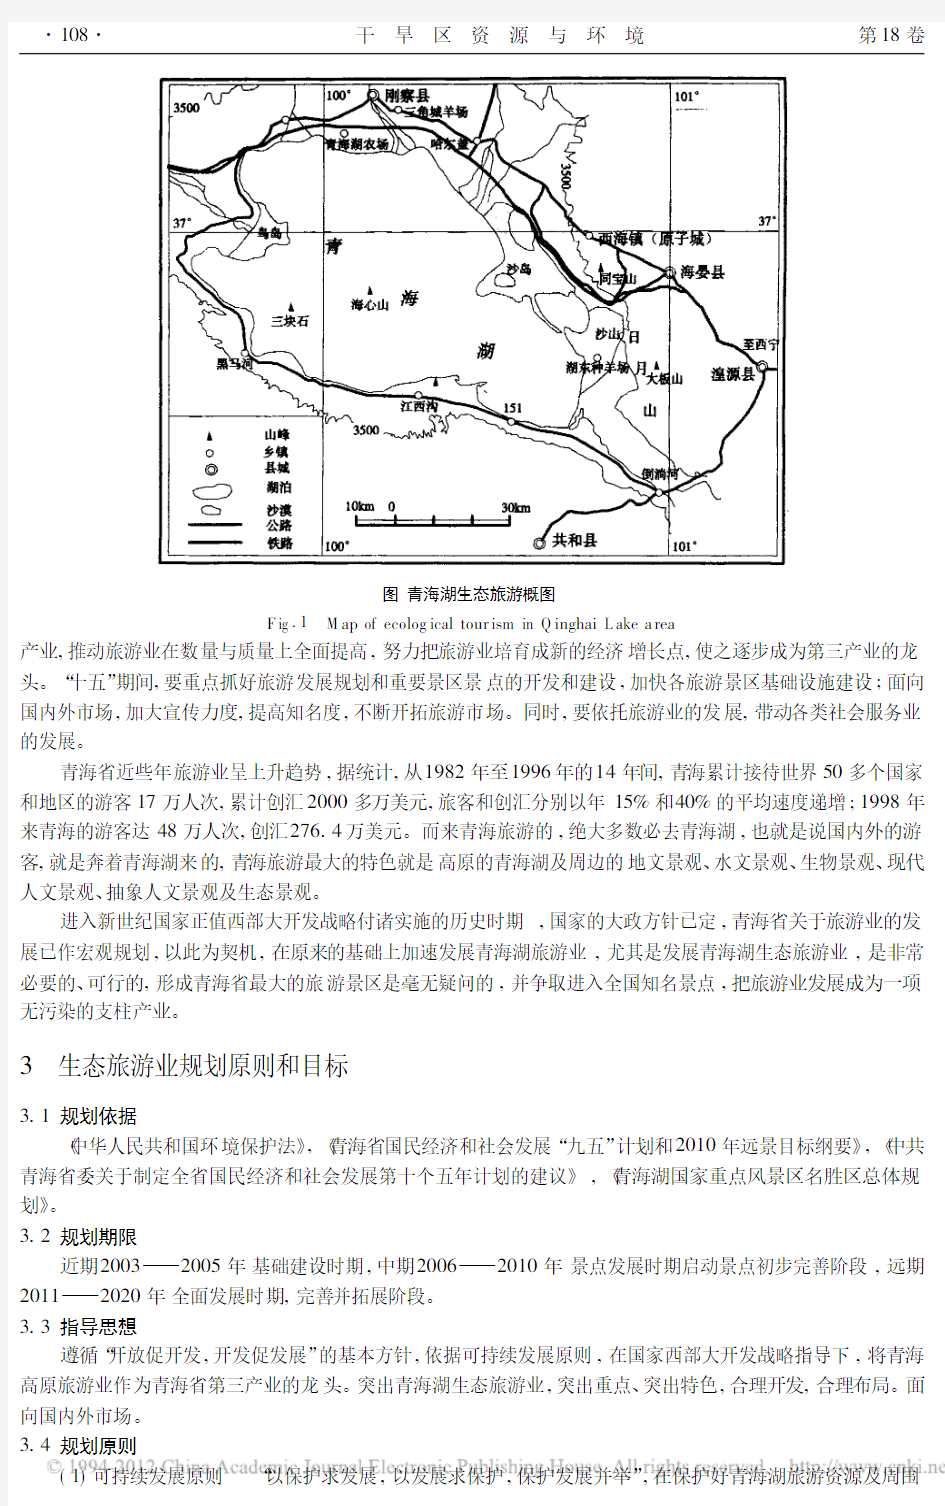 青海湖生态旅游规划研究